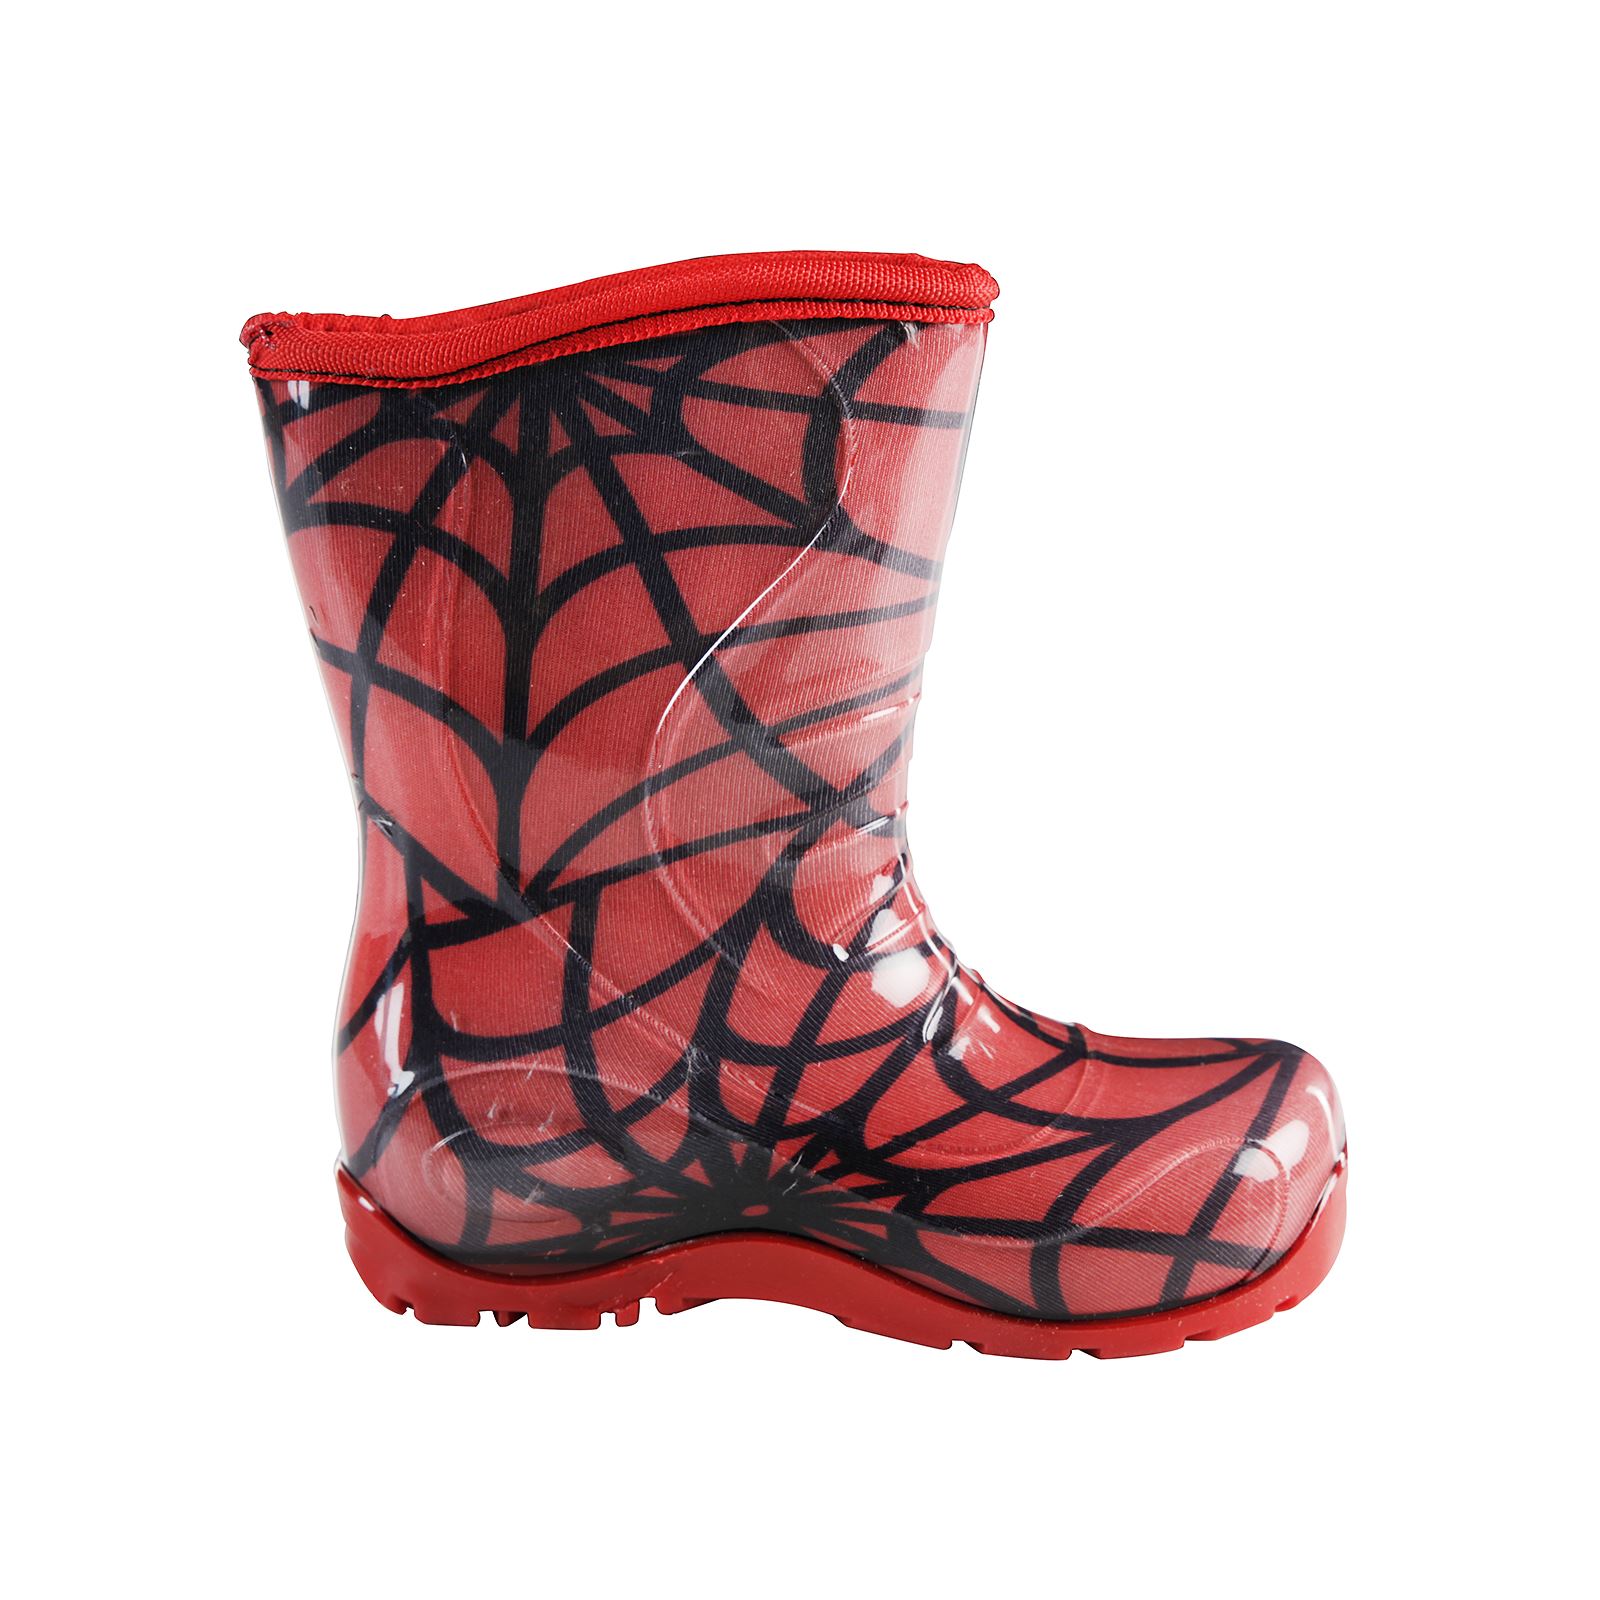 Boots Erkek Çocuk Ağ Desenli Yağmur Çizmesi 24-28 Numara Kırmızı